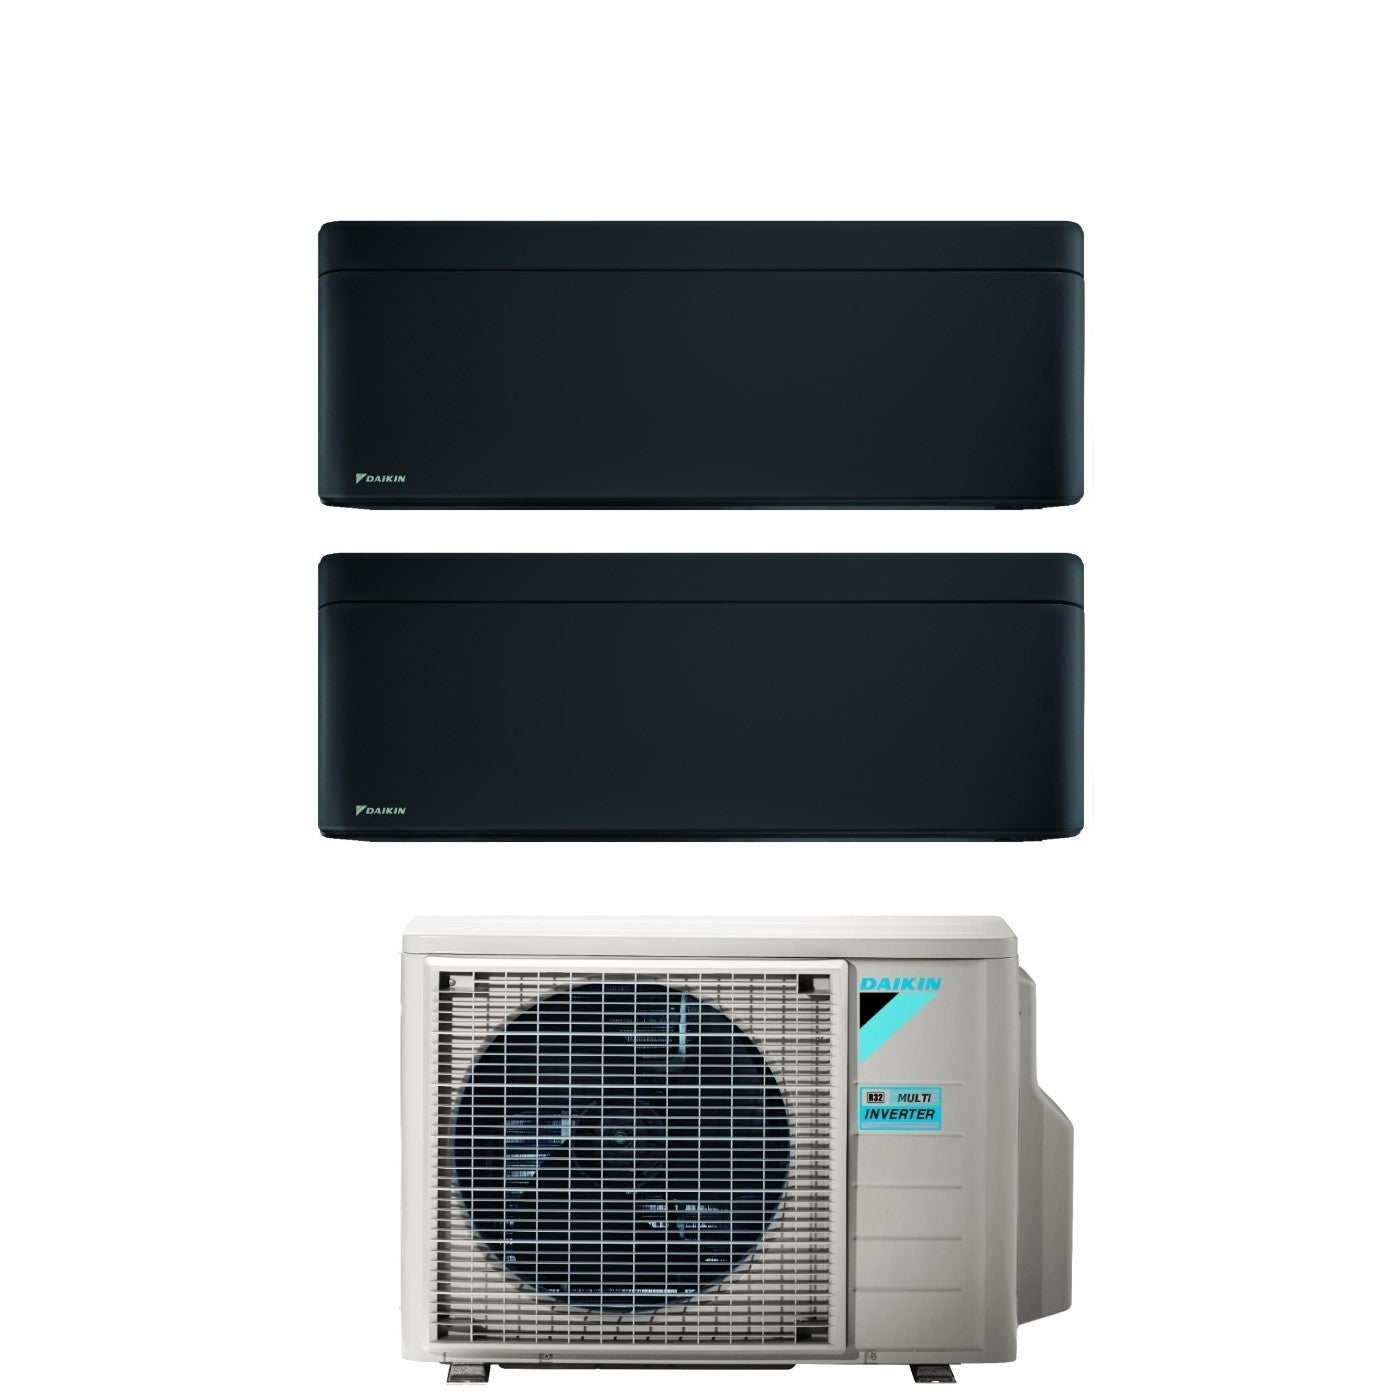 Climatizzatore Condizionatore Daikin Bluevolution Dual Split Inverter serie STYLISH TOTAL BLACKWOOD 7+12 con 2MXM40A R-32 Wi-Fi Integrato 7000+12000 Colore Nero Garanzia Italiana